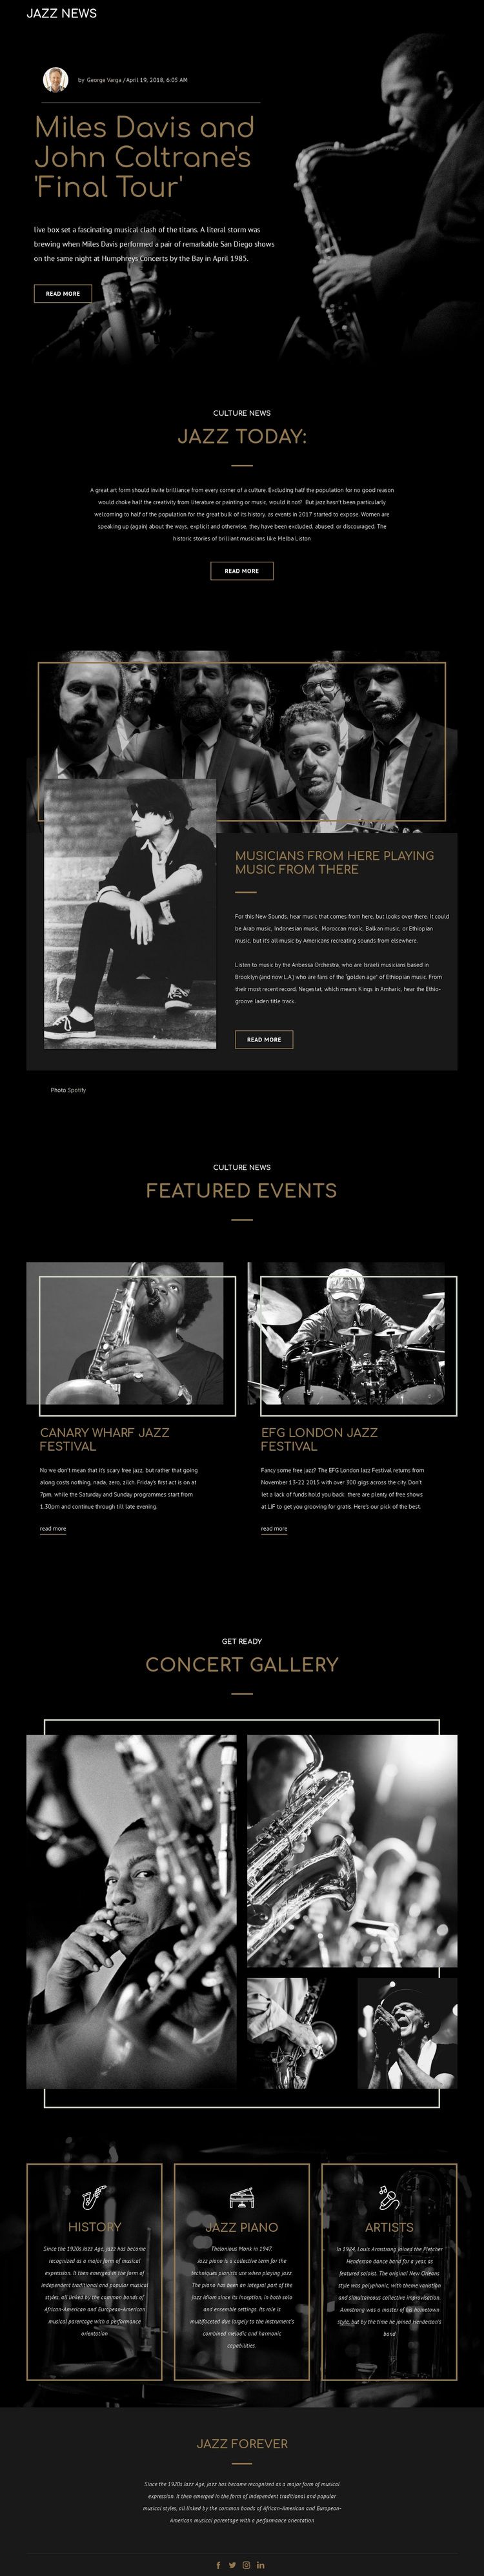 Legengs of jazz music Website Design